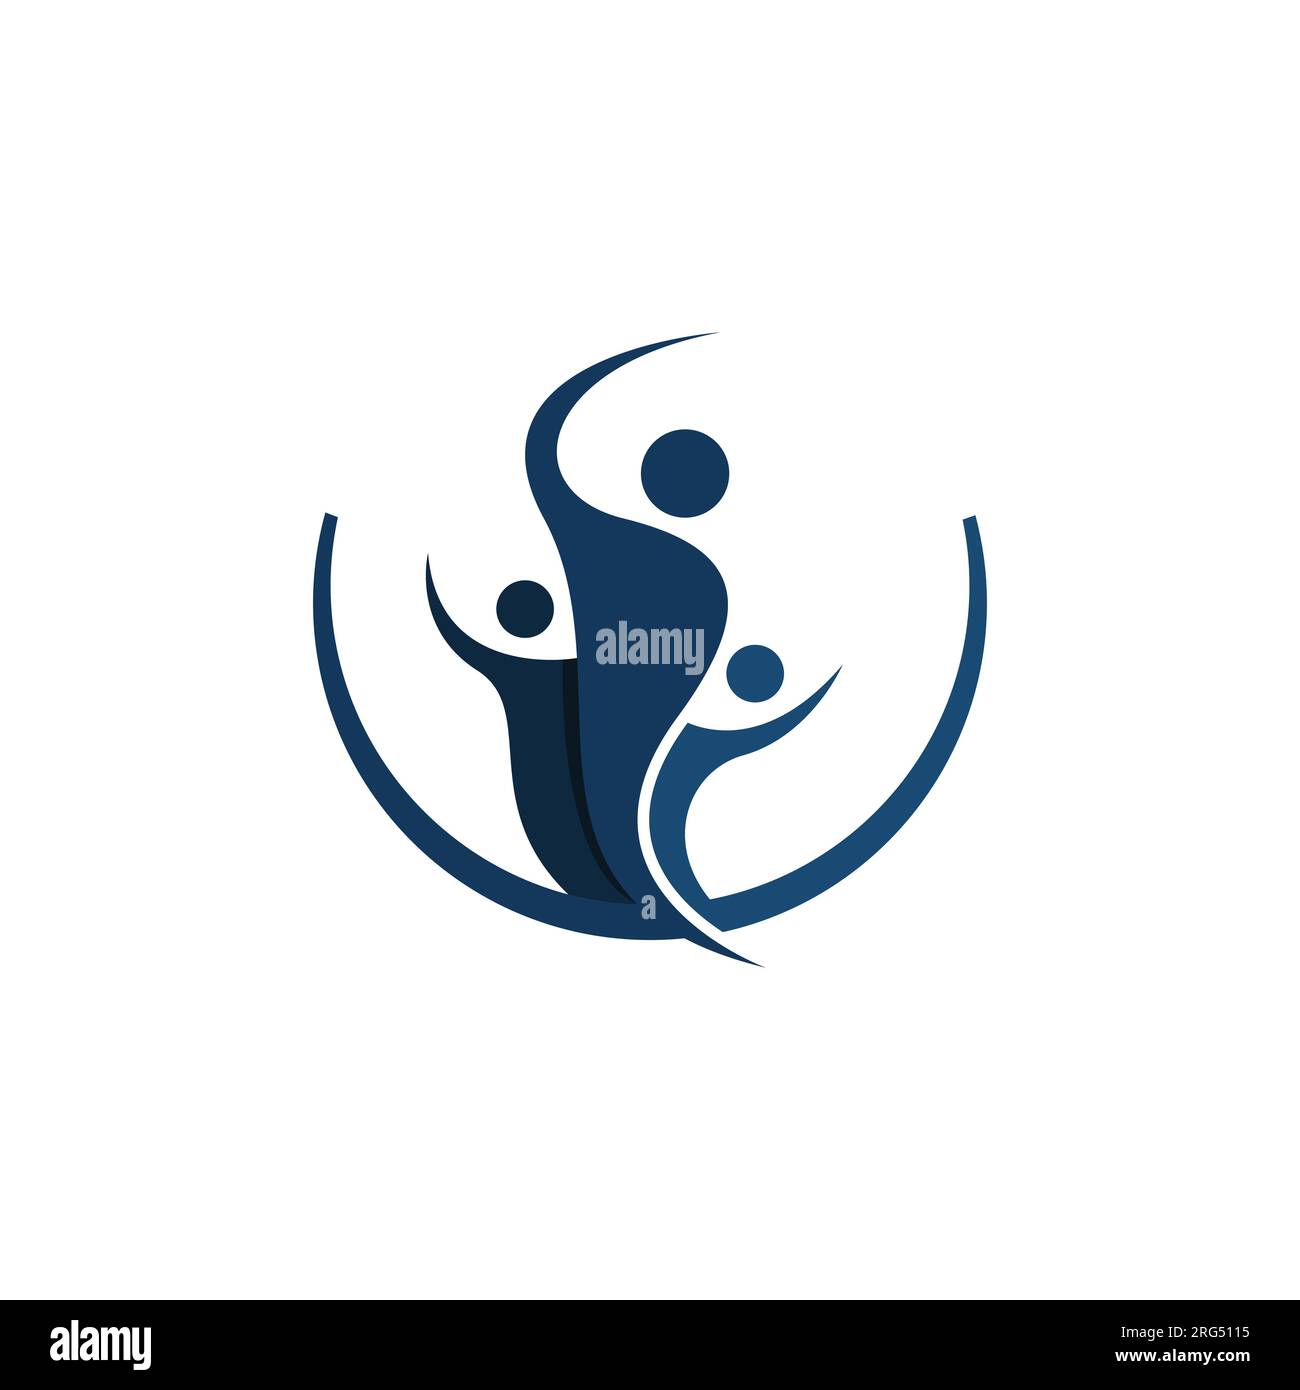 Image vectorielle de conception de logo de figure humaine abstraite. Logo de figures humaines abstraites icône de conception d'éléments Illustration de Vecteur